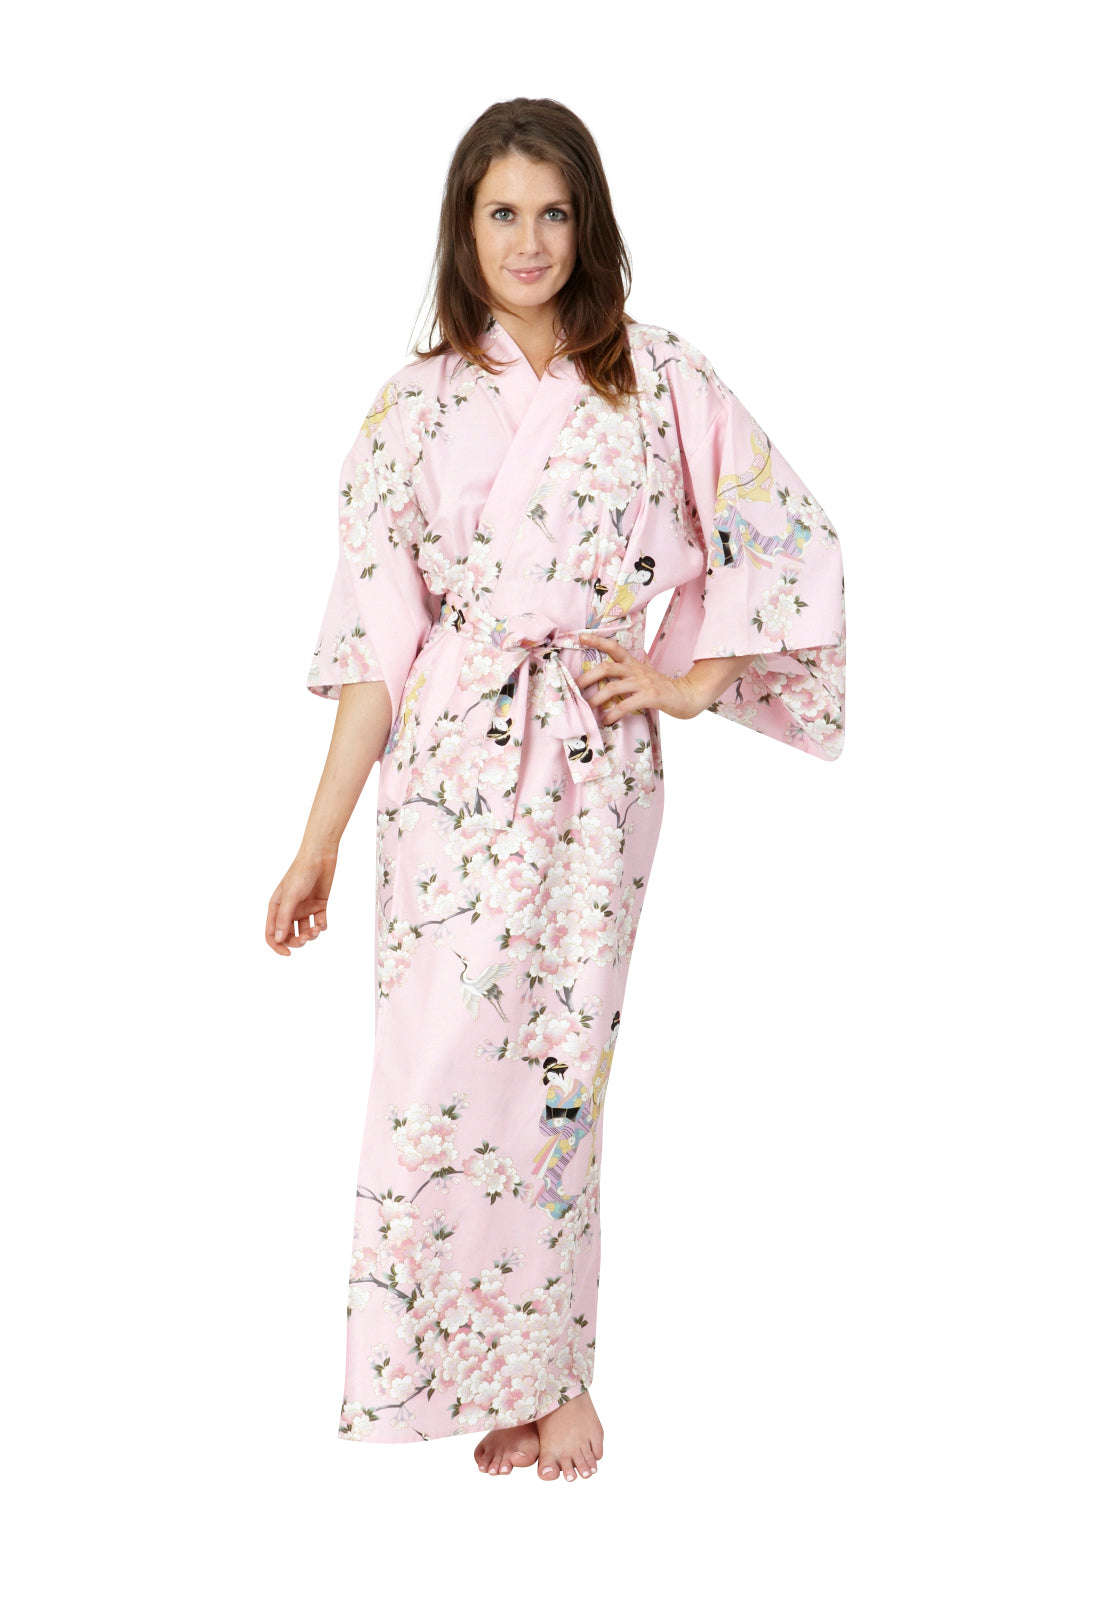 Kimono Robes Australia | Boho Kimono | Kimono Dressing Gown – Beautiful ...